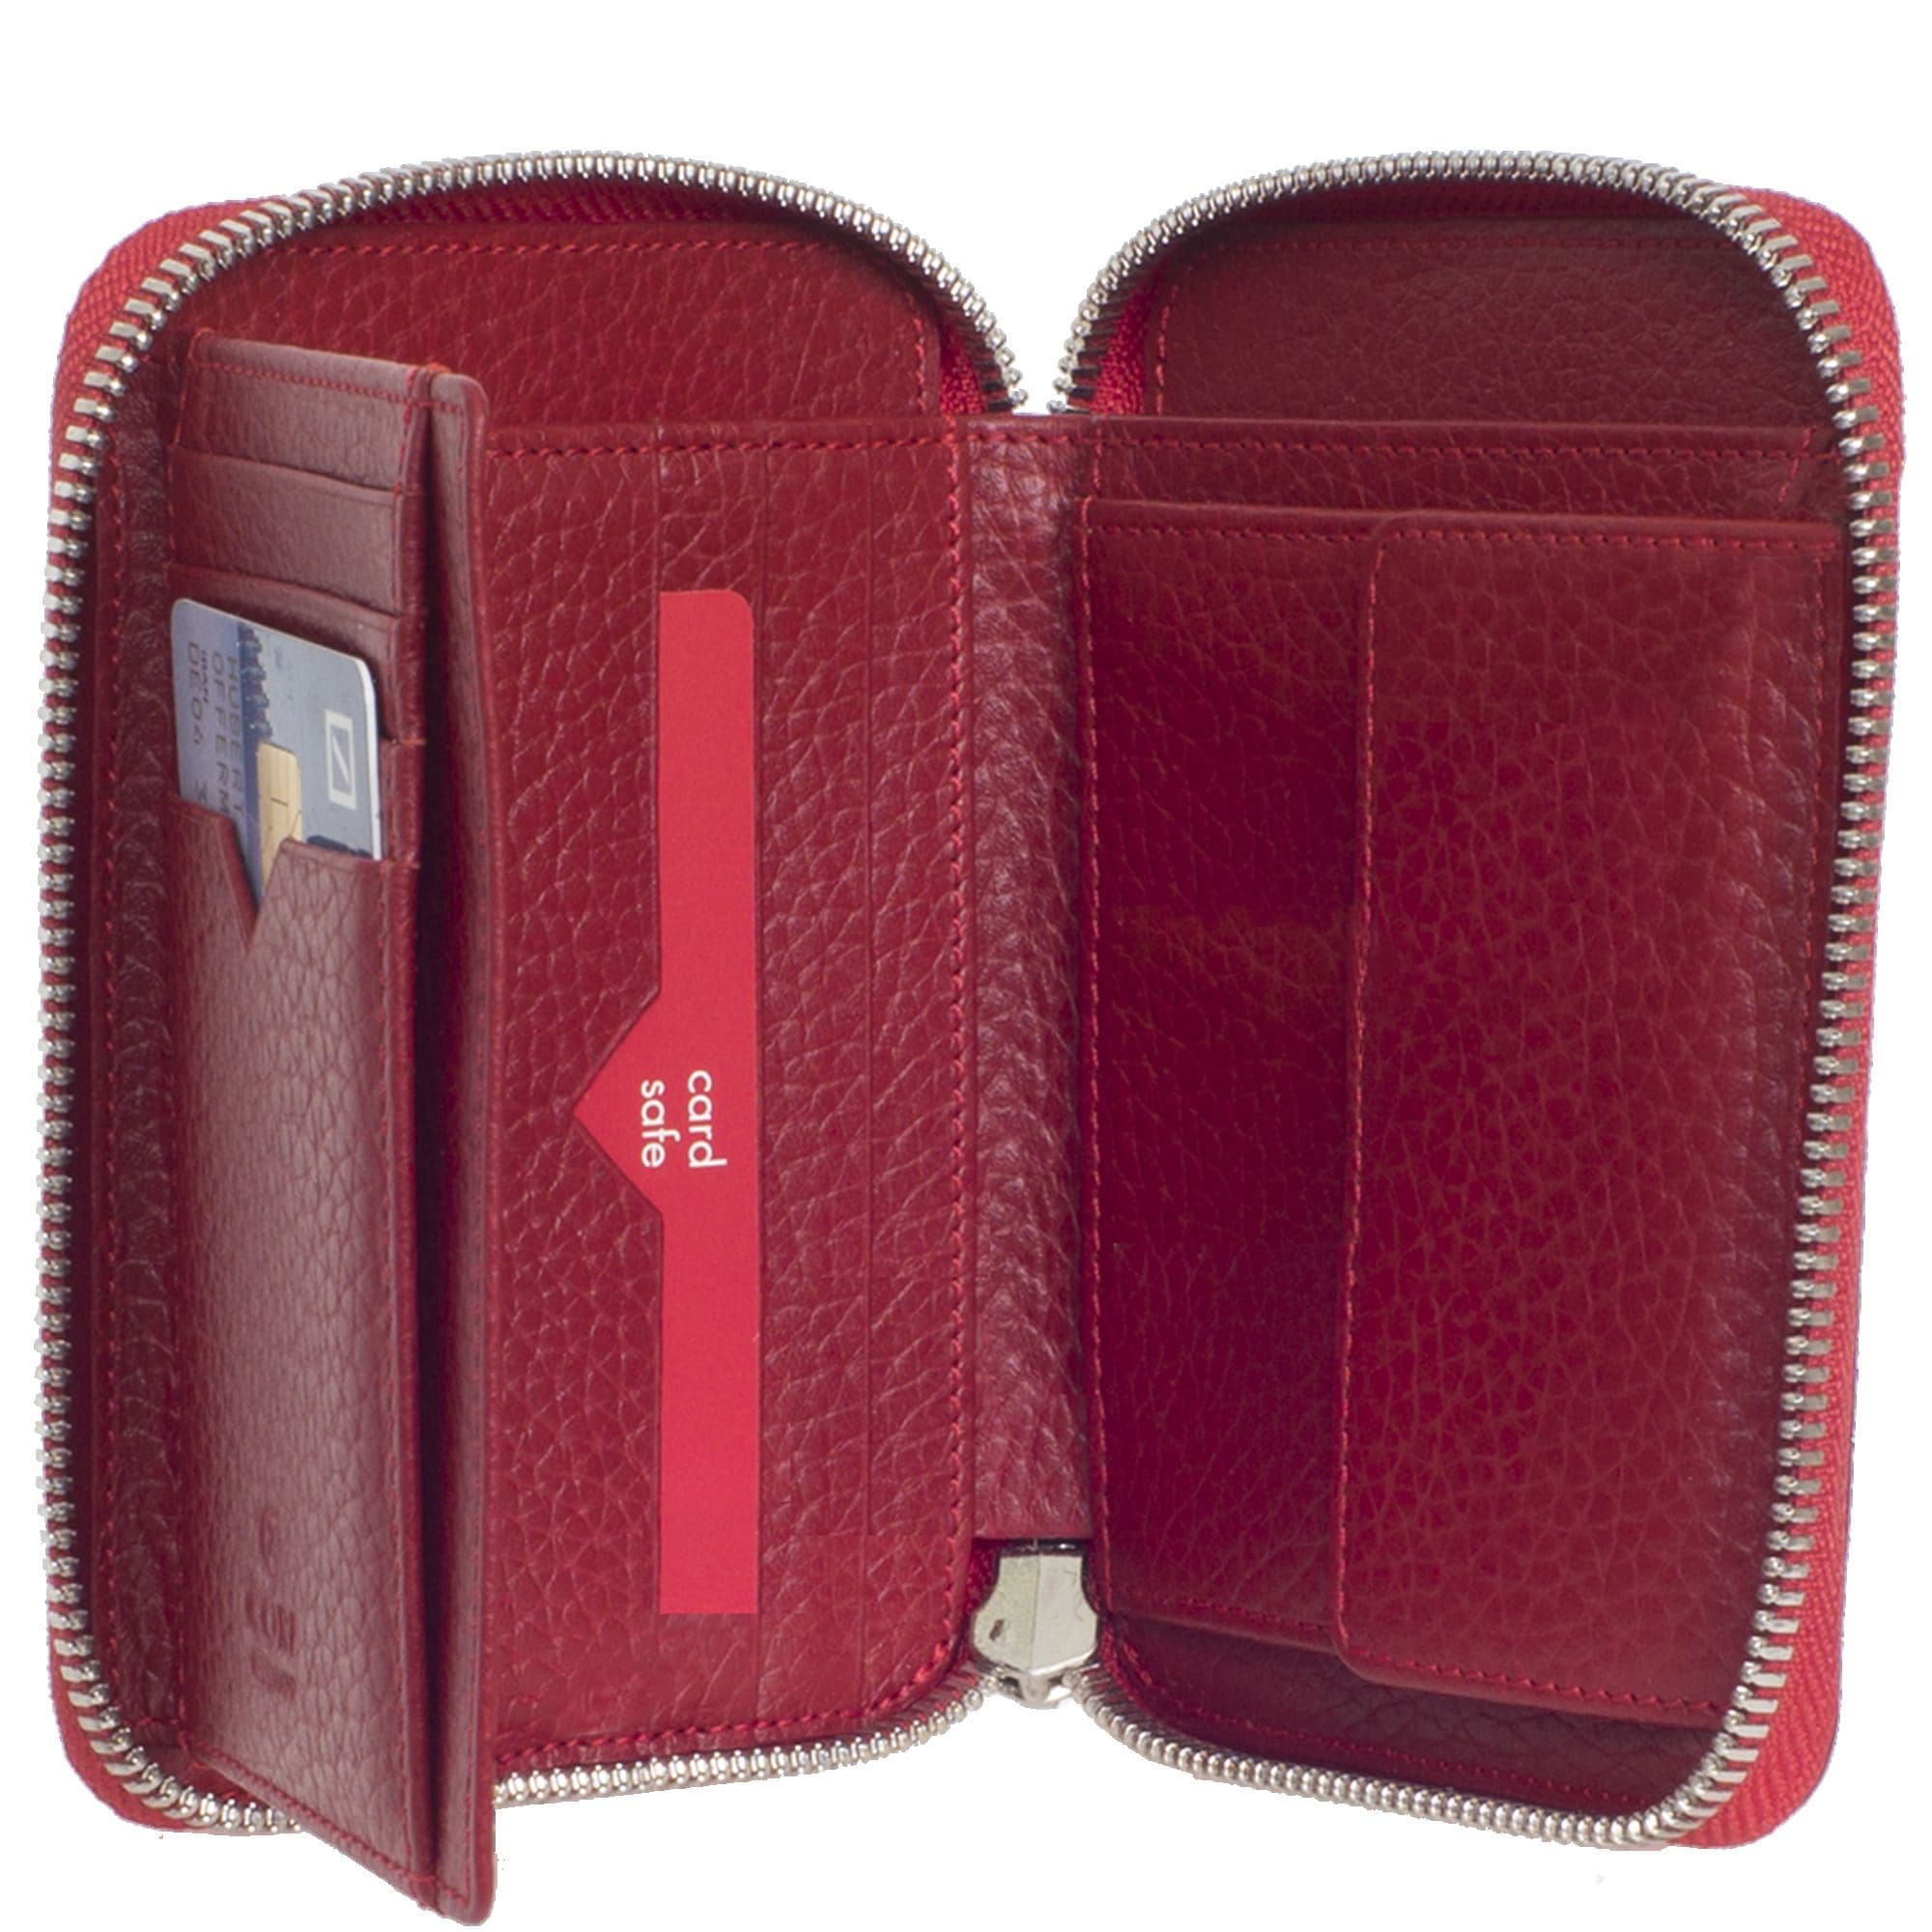 Geldbörse Portemonnaie Leder rot mit Reißverschluss